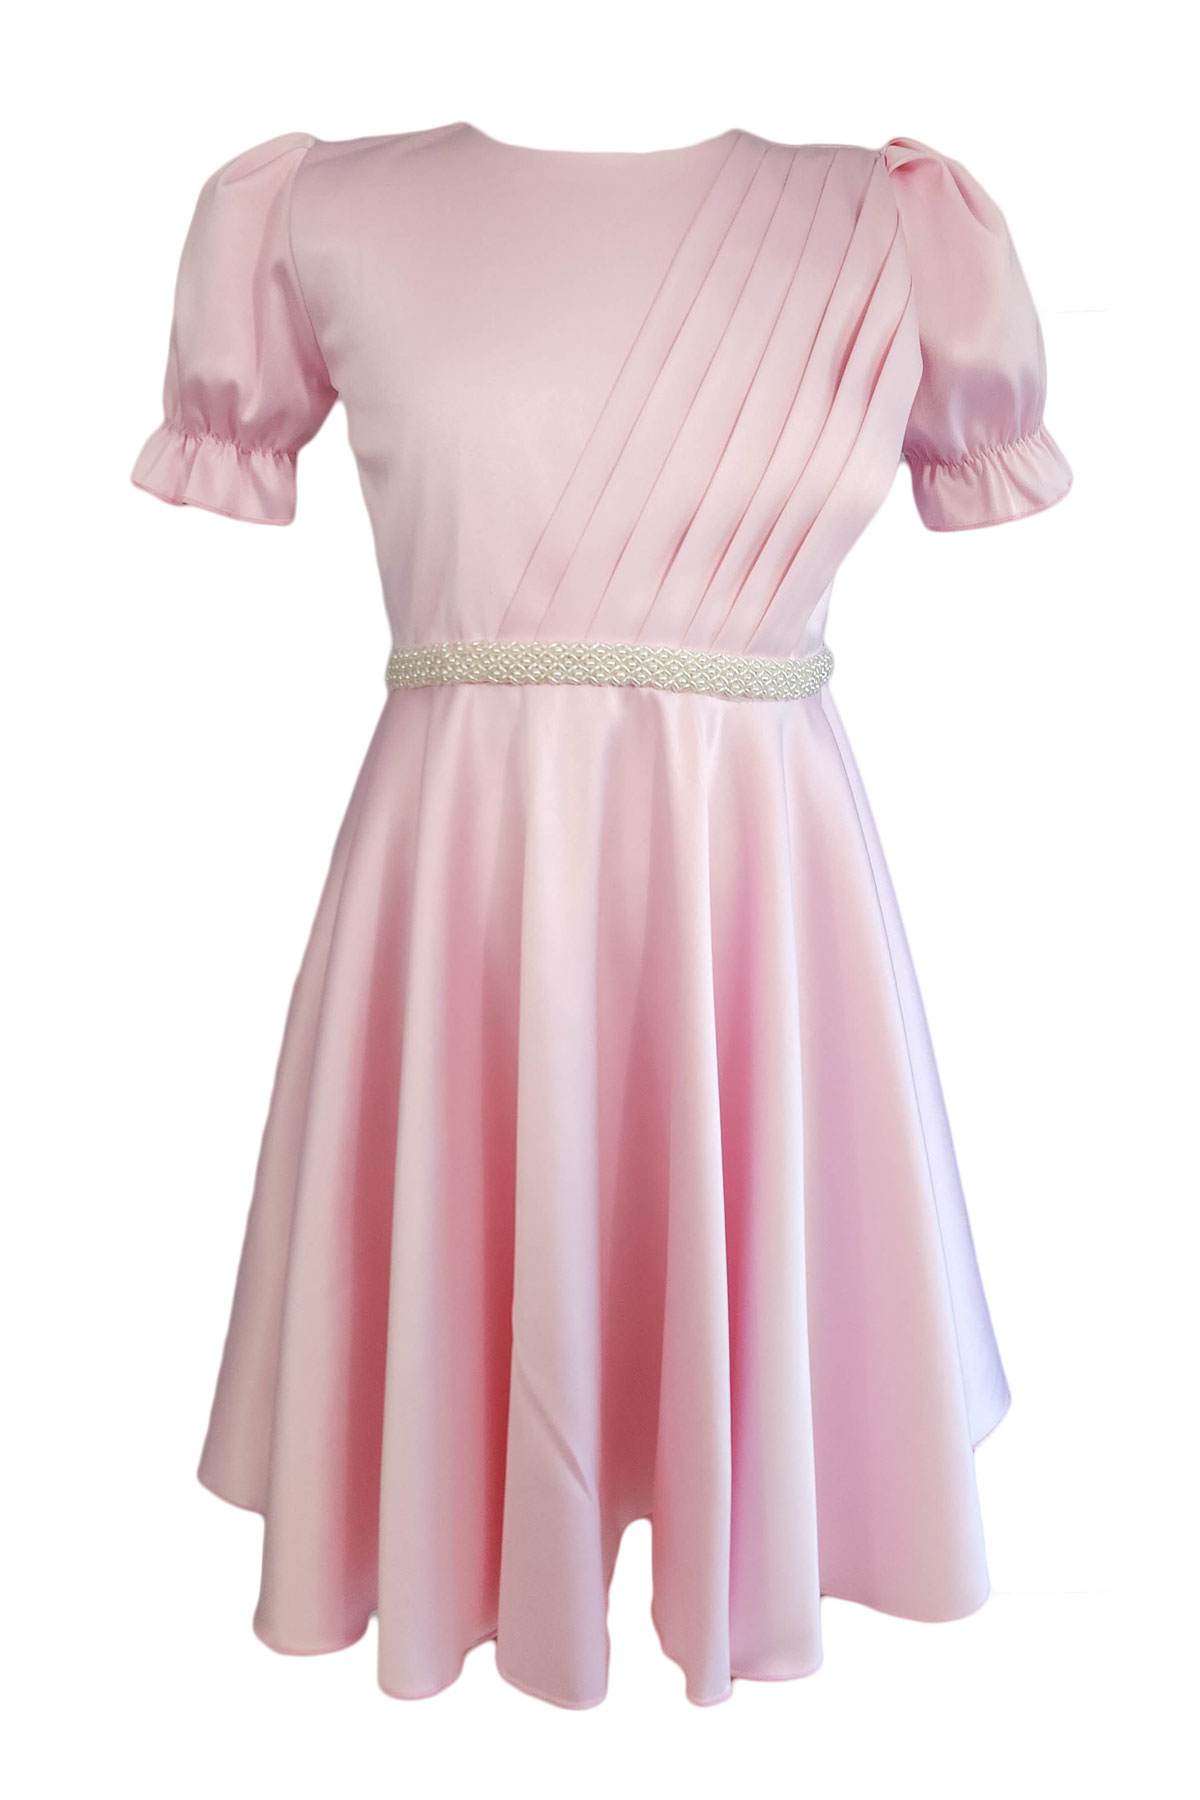 Rochie eleganta pentru fete, model Cristina, culoare roz deschis